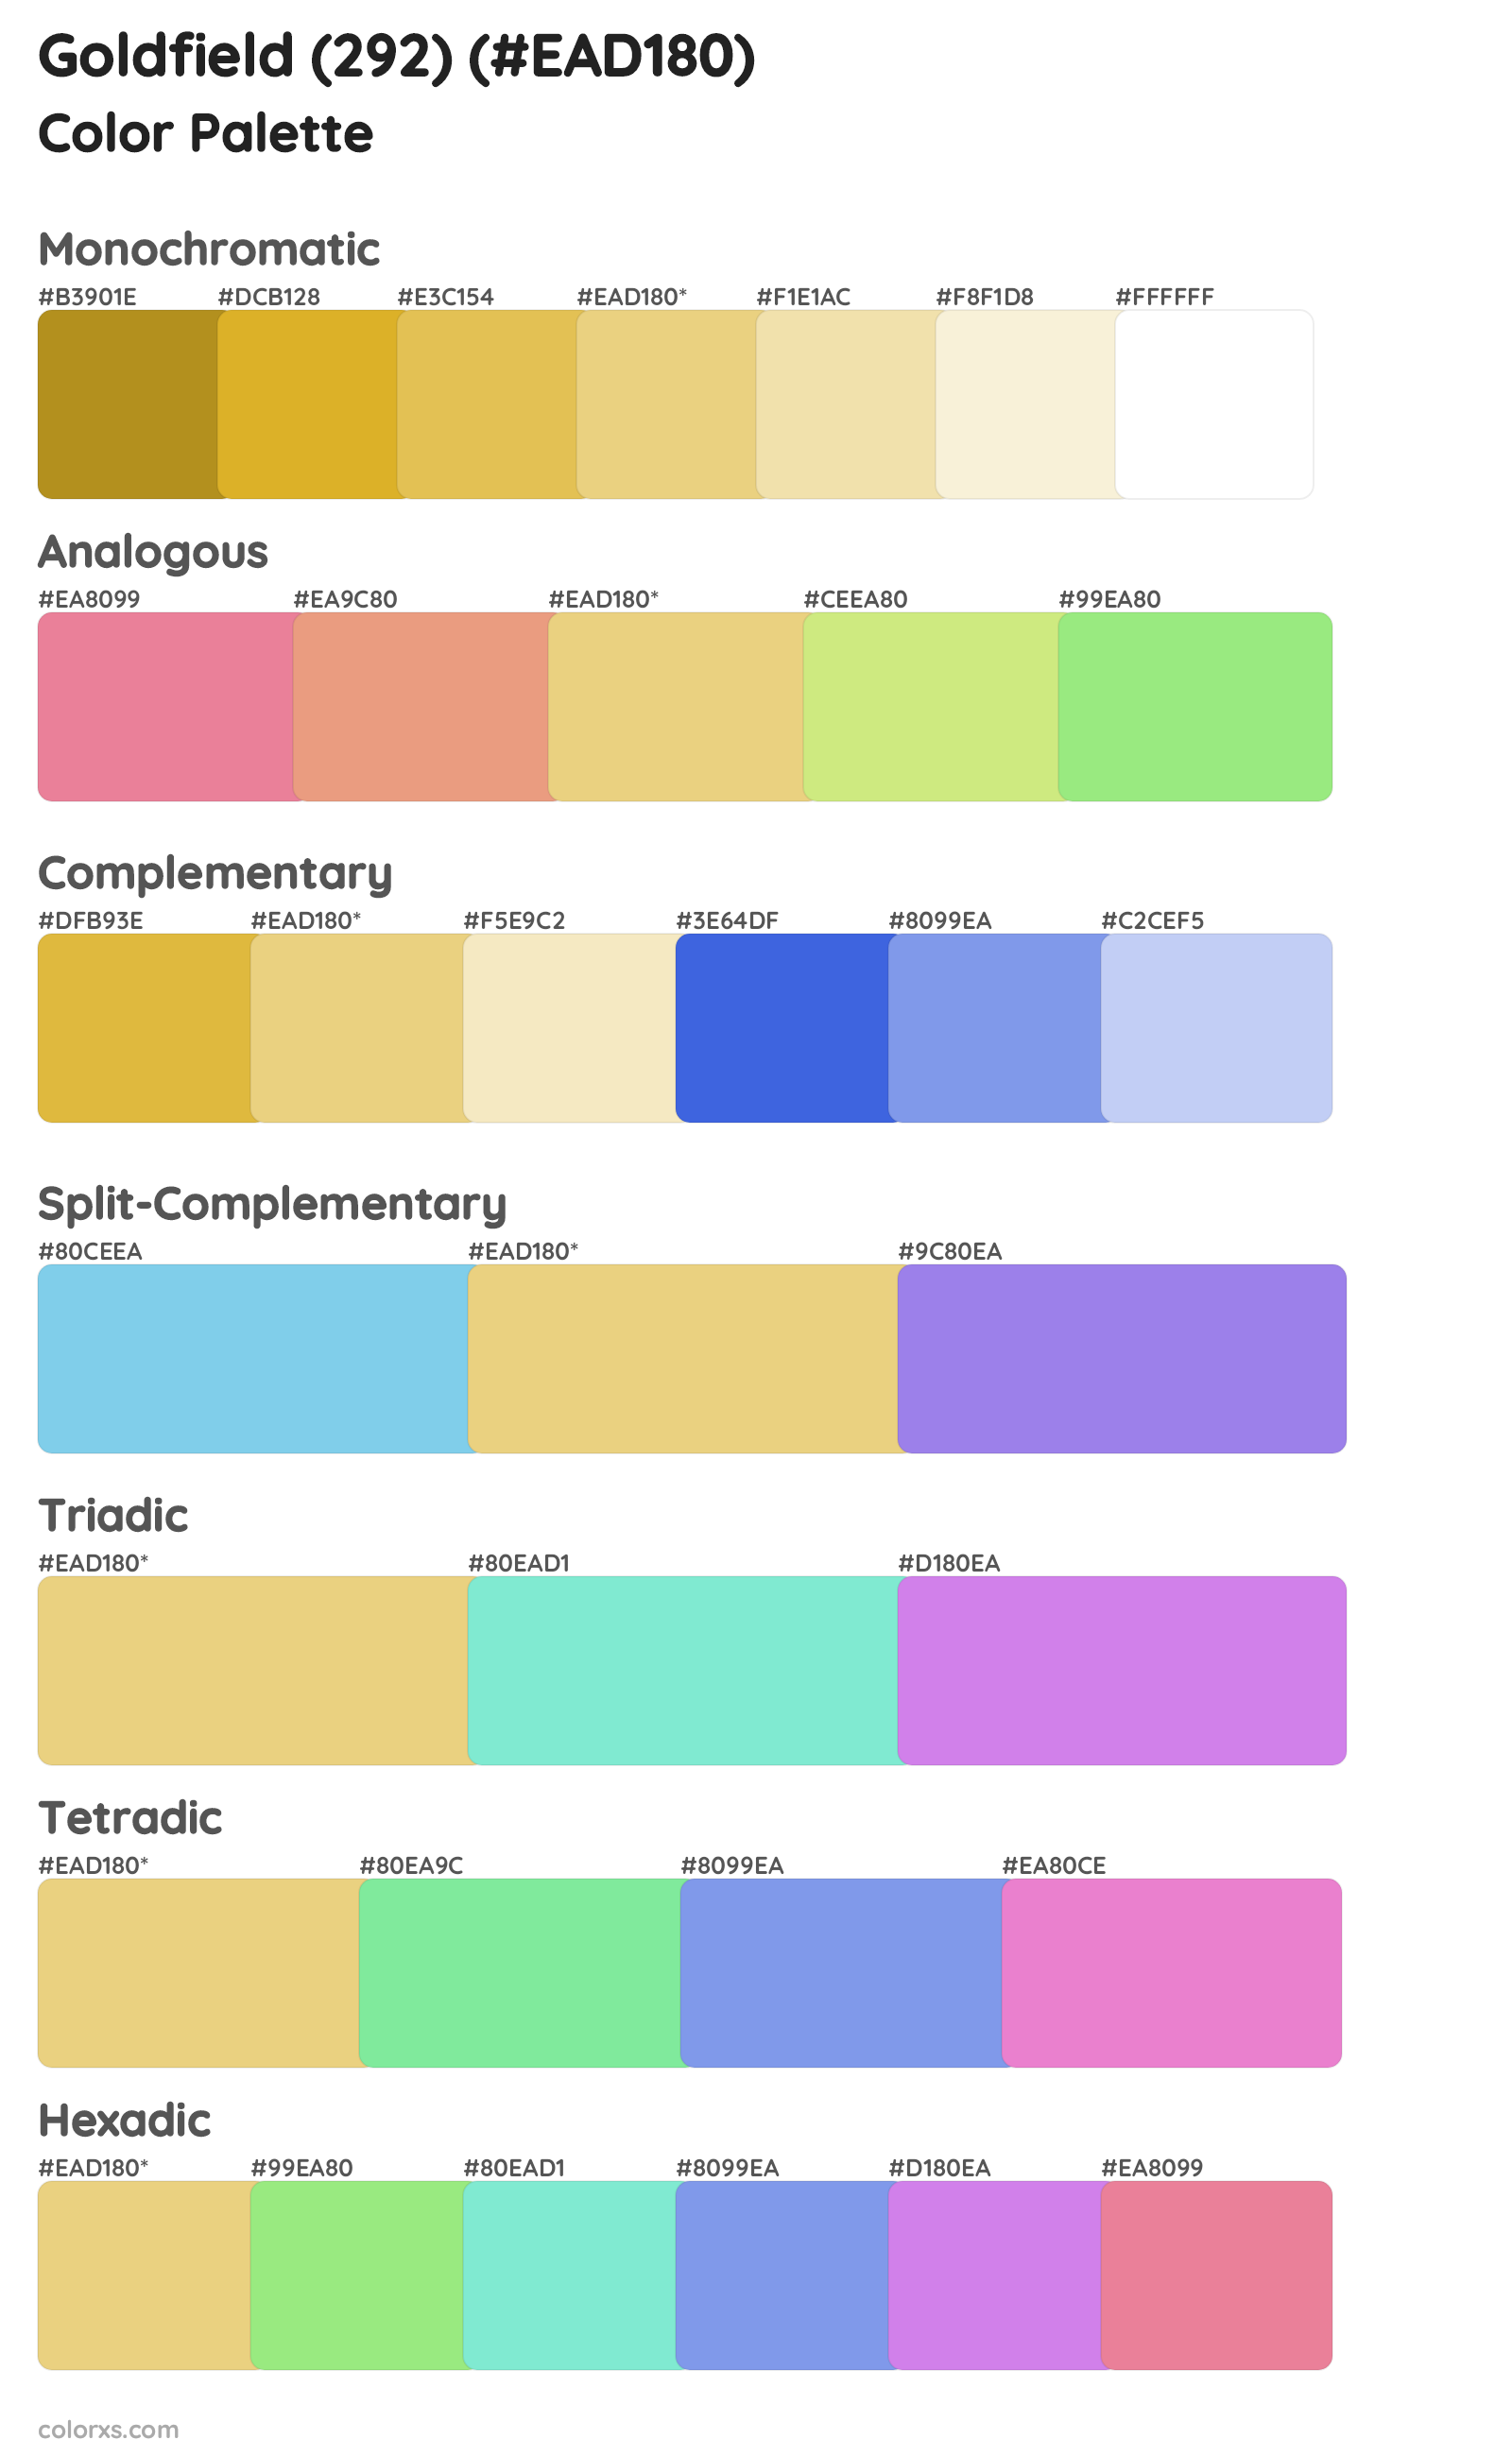 Goldfield (292) Color Scheme Palettes